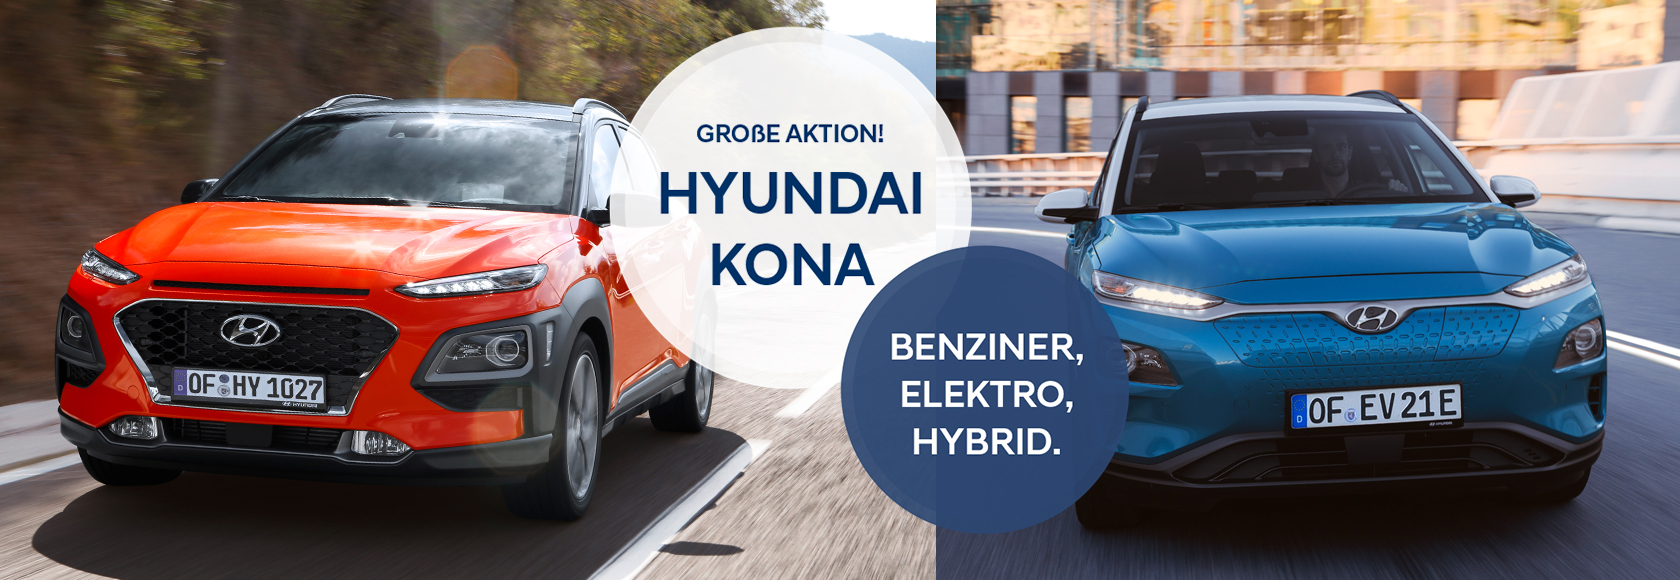 Hyundai stellt neuen KONA vor - S & T Autogalerie Bremerhaven